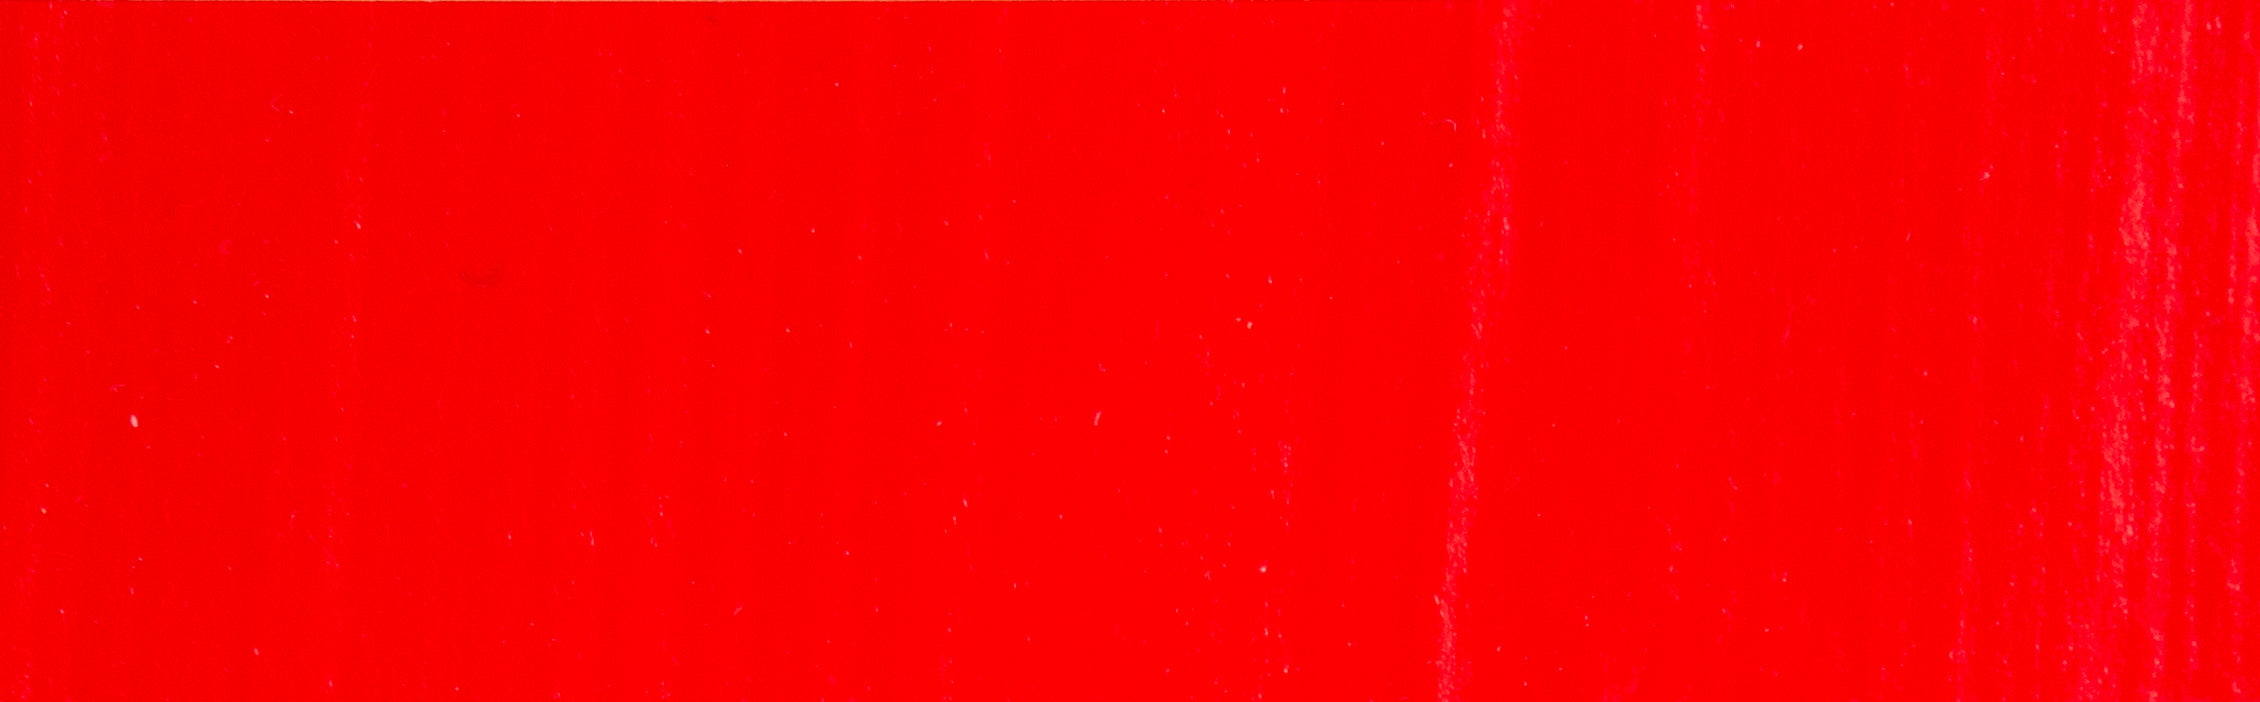 Diketo-Pyrrole Red DPP - Wallace Seymour Acrylic Paint